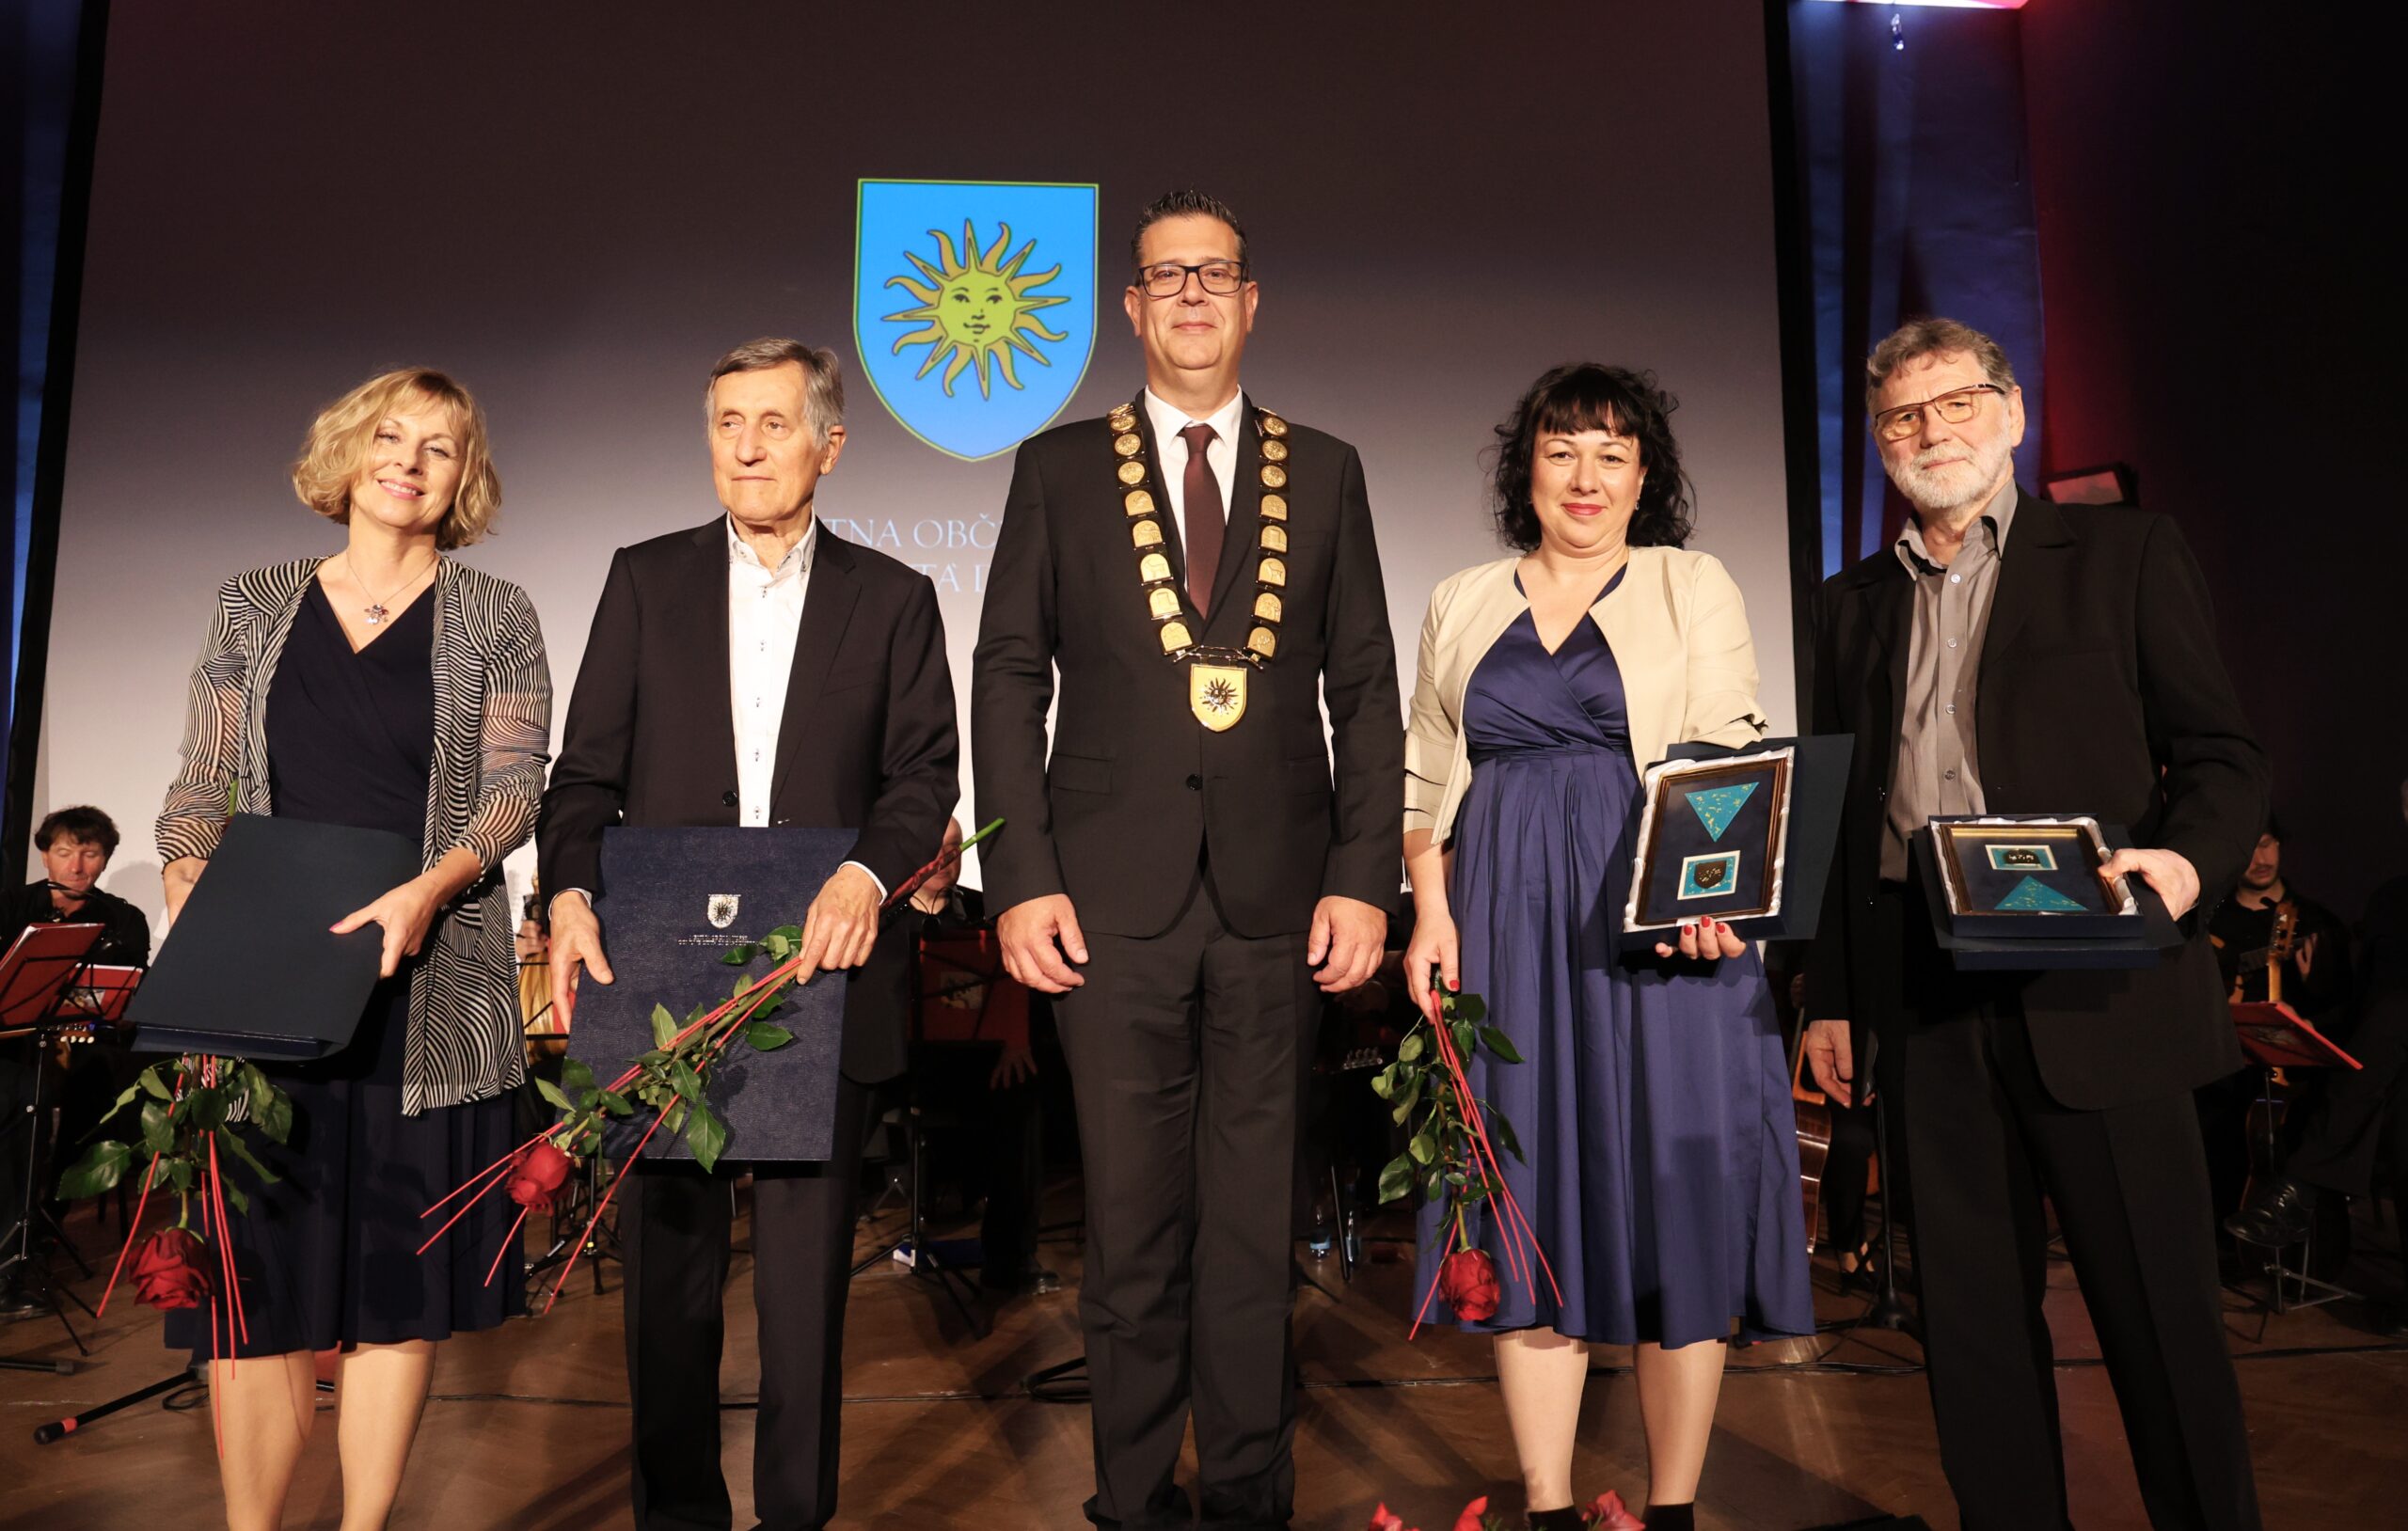 Župan občine Koper in nagrajenci